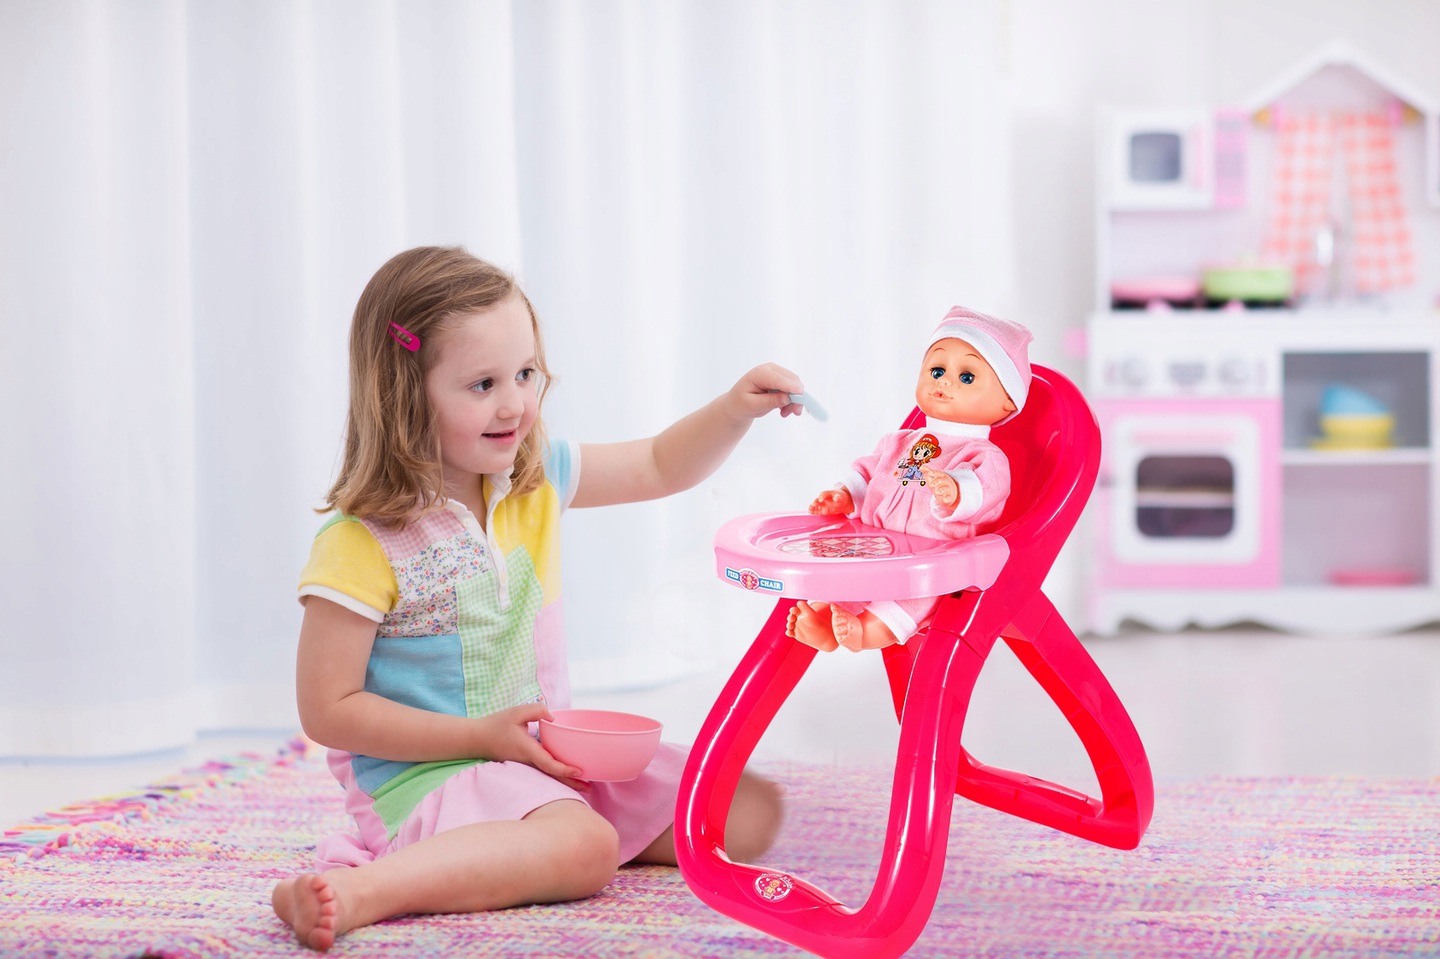 Set Papusa de jucarie IDL BABY PINK cu Scaunel de Hranire si Accesorii tematice realiste pentru jocul de roluri, Incurajeaza dezvoltarea personala intr-un mod distractiv stimuland inteligenta fetitelor, Culoare-Roz